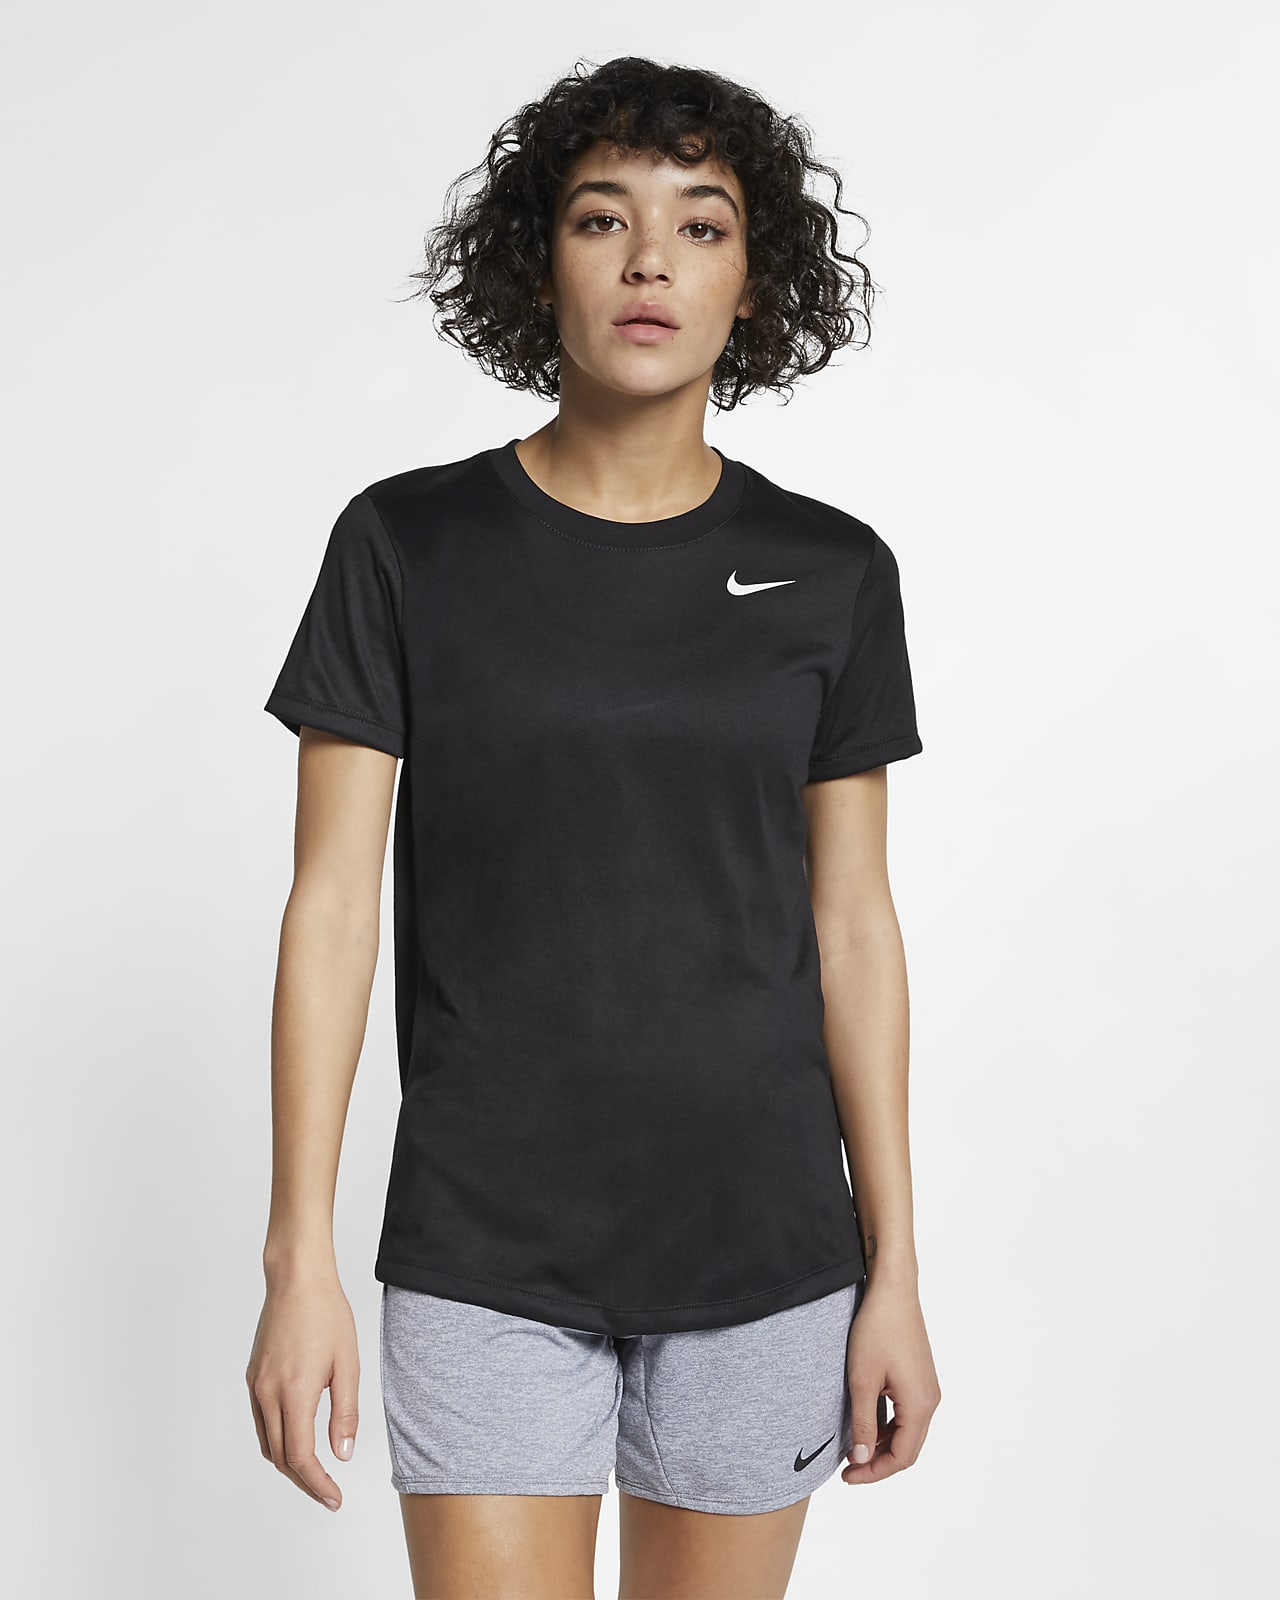 เสื้อยืดเทรนนิ่งผู้หญิง Nike Dri-FIT